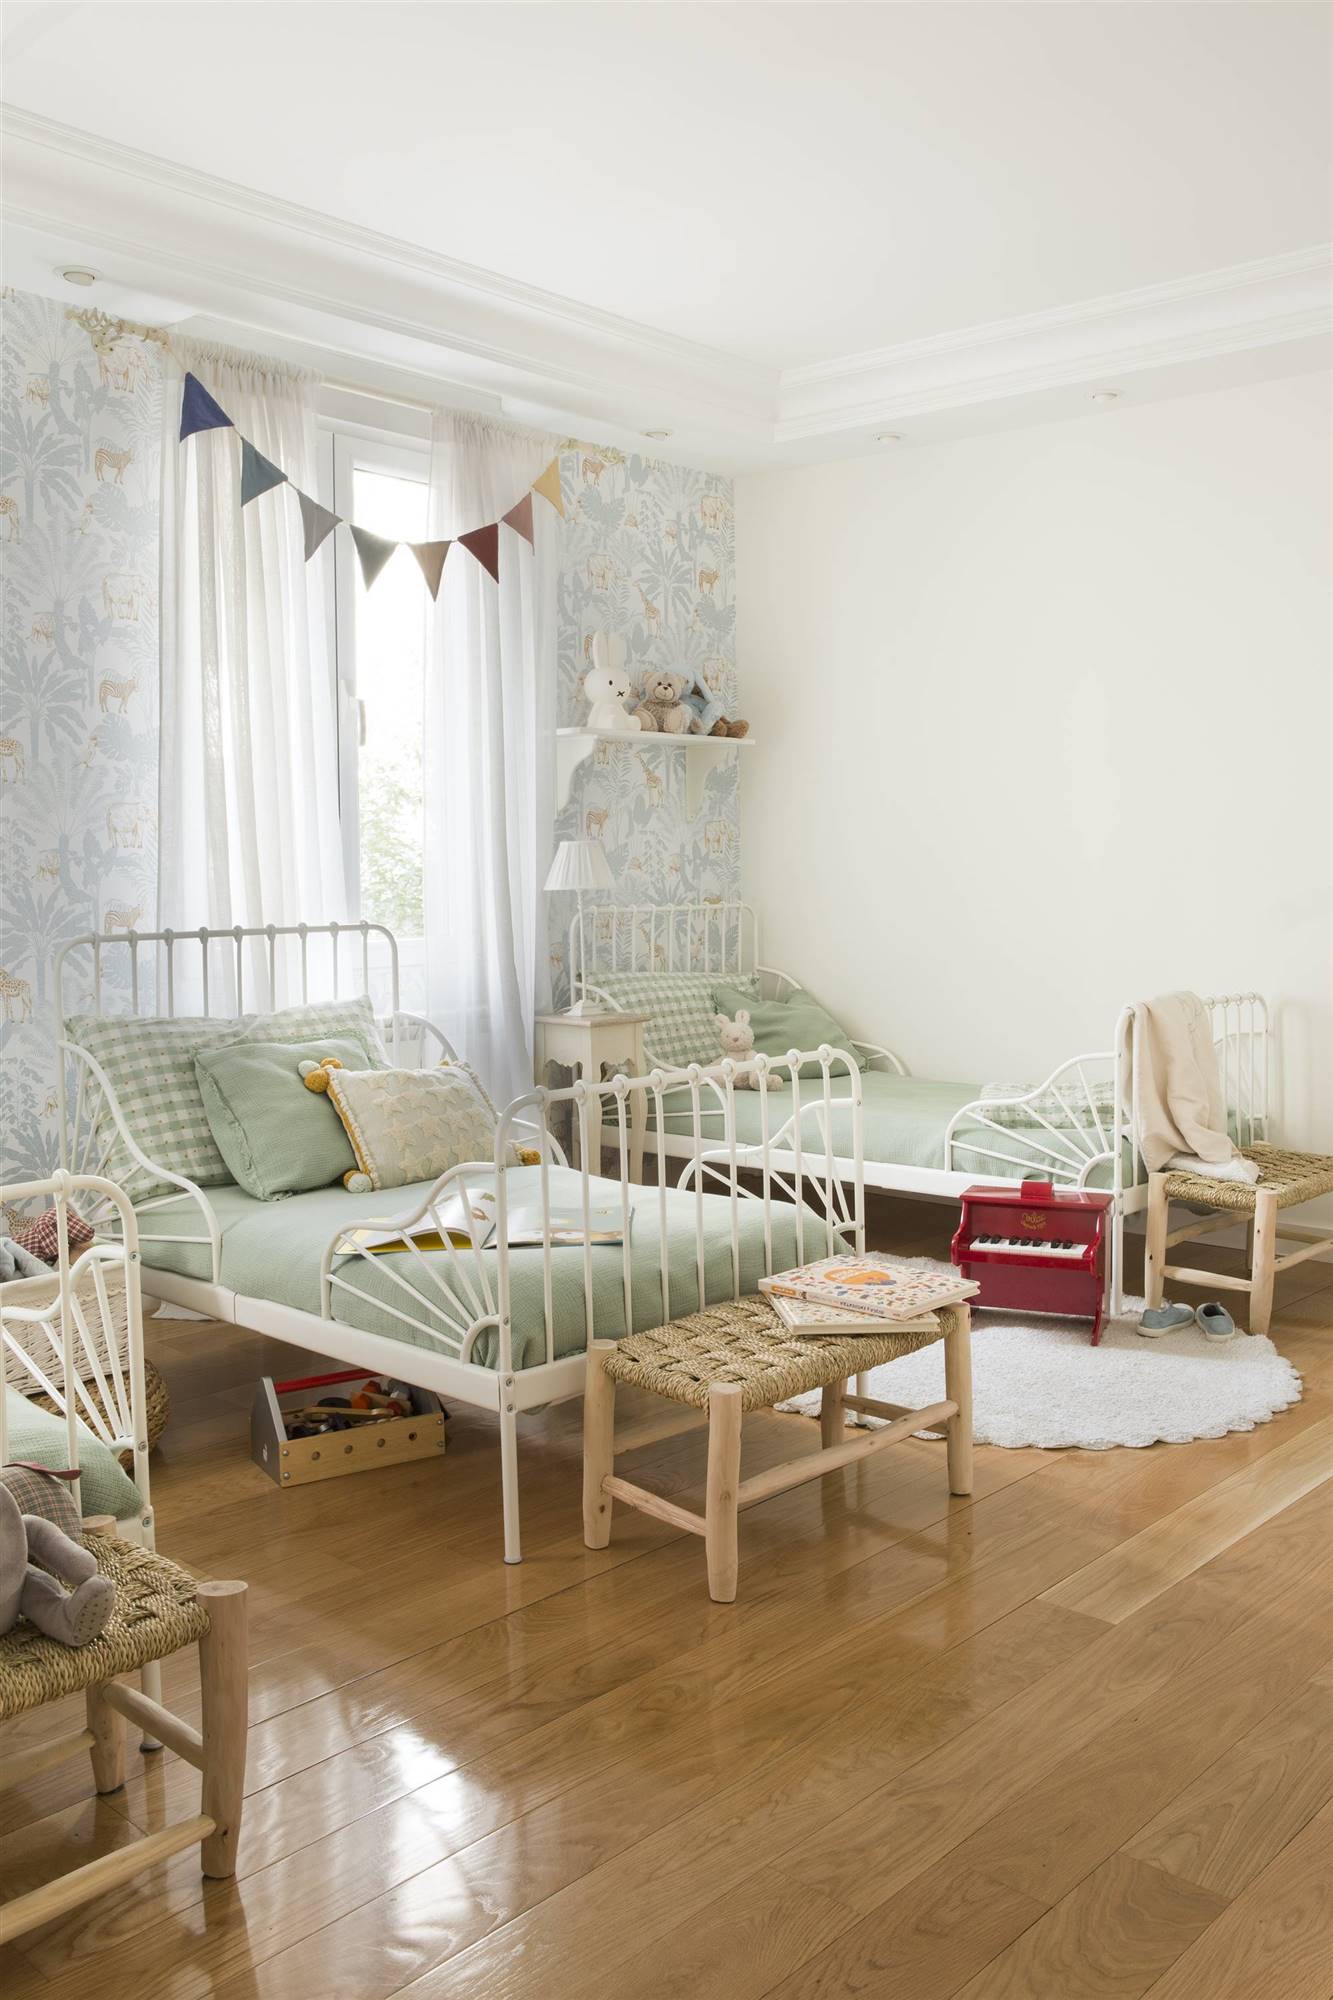  Dormitorio infantil con cama extensible de IKEA.